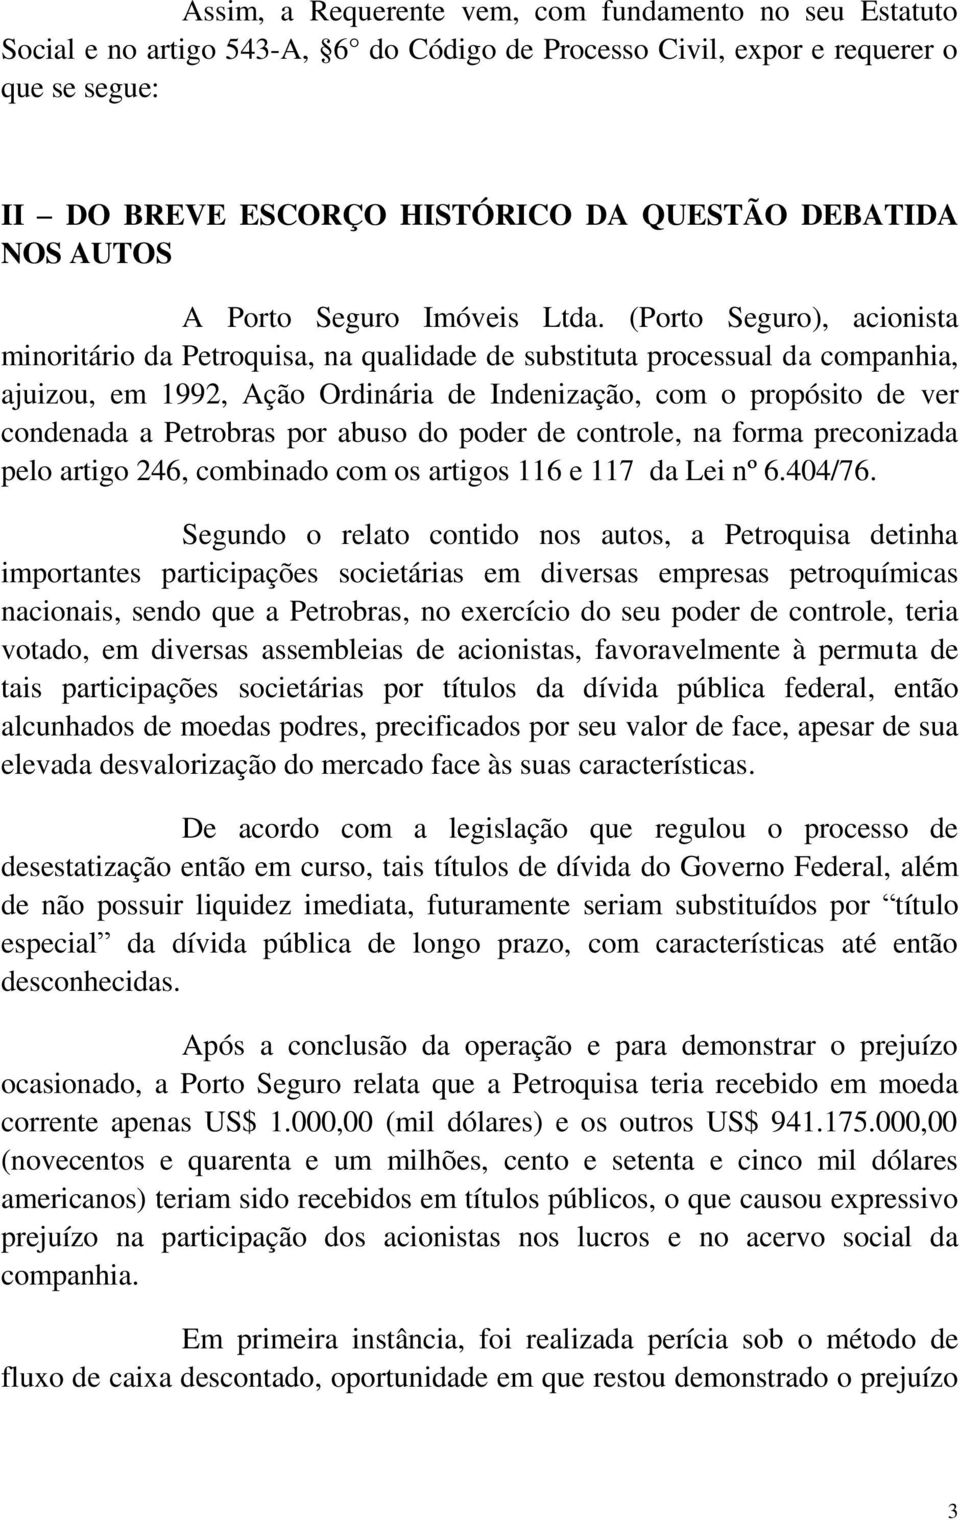 (Porto Seguro), acionista minoritário da Petroquisa, na qualidade de substituta processual da companhia, ajuizou, em 1992, Ação Ordinária de Indenização, com o propósito de ver condenada a Petrobras